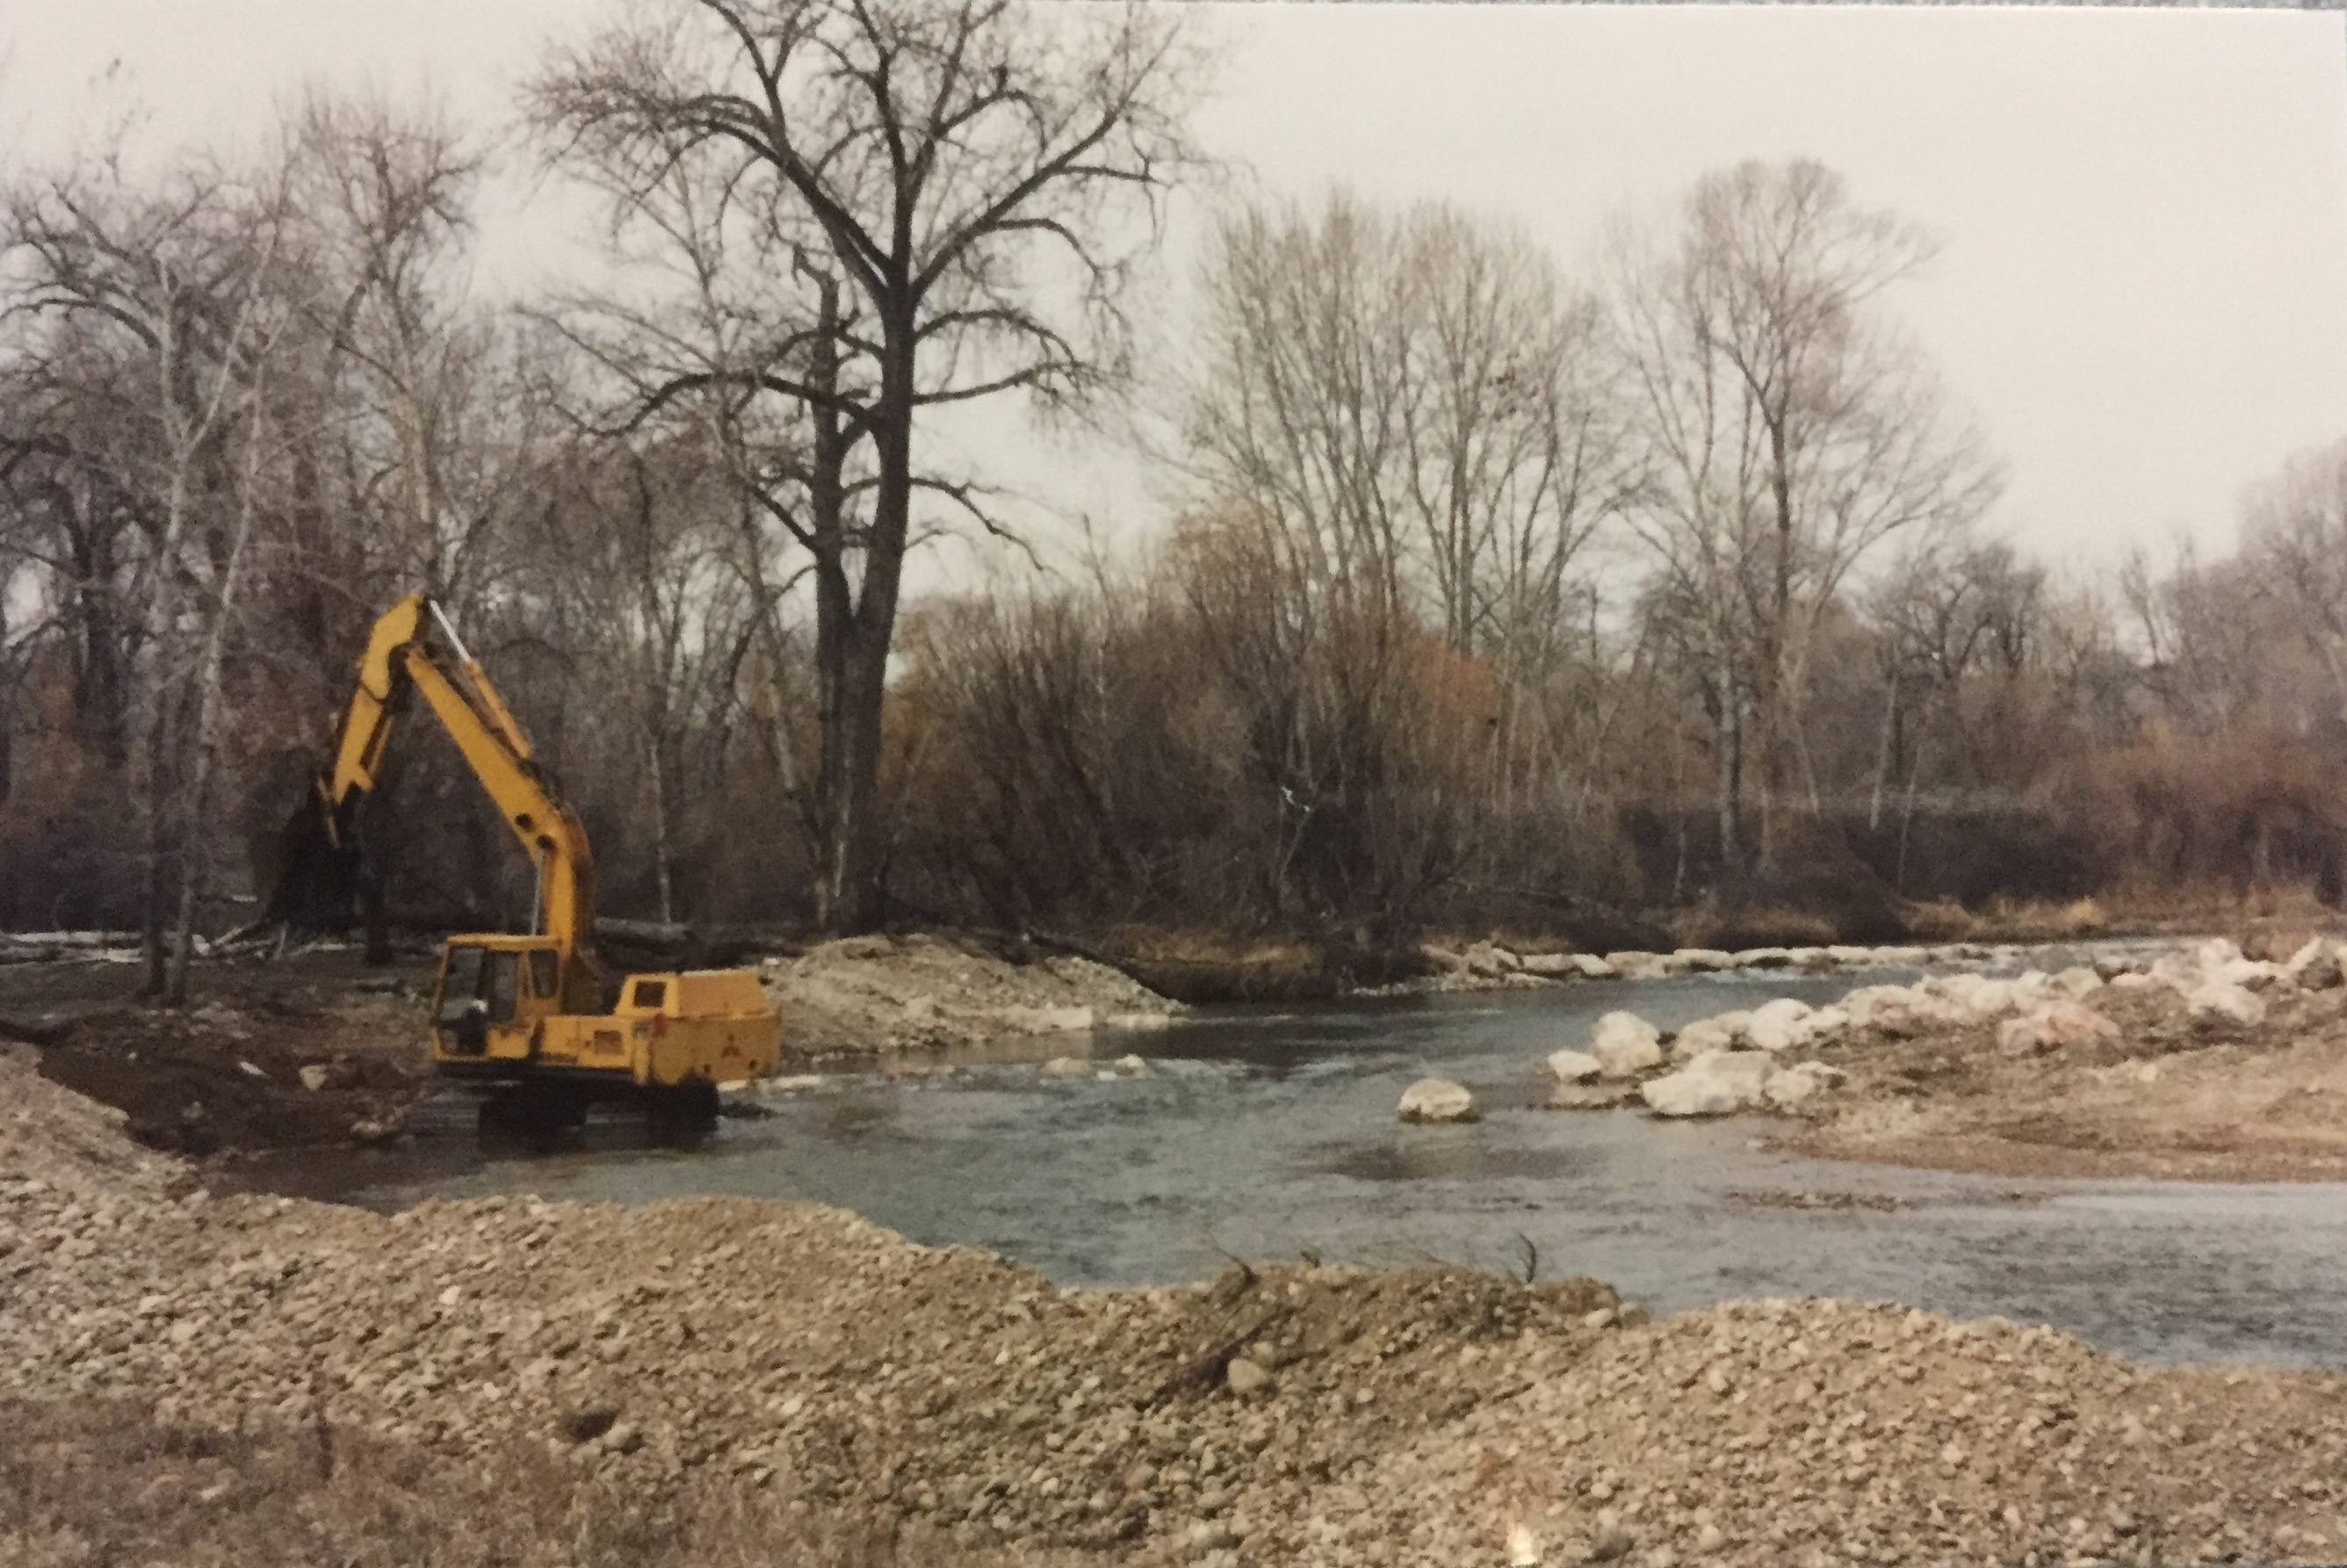 Stream restoration efforts for river banks using riprap